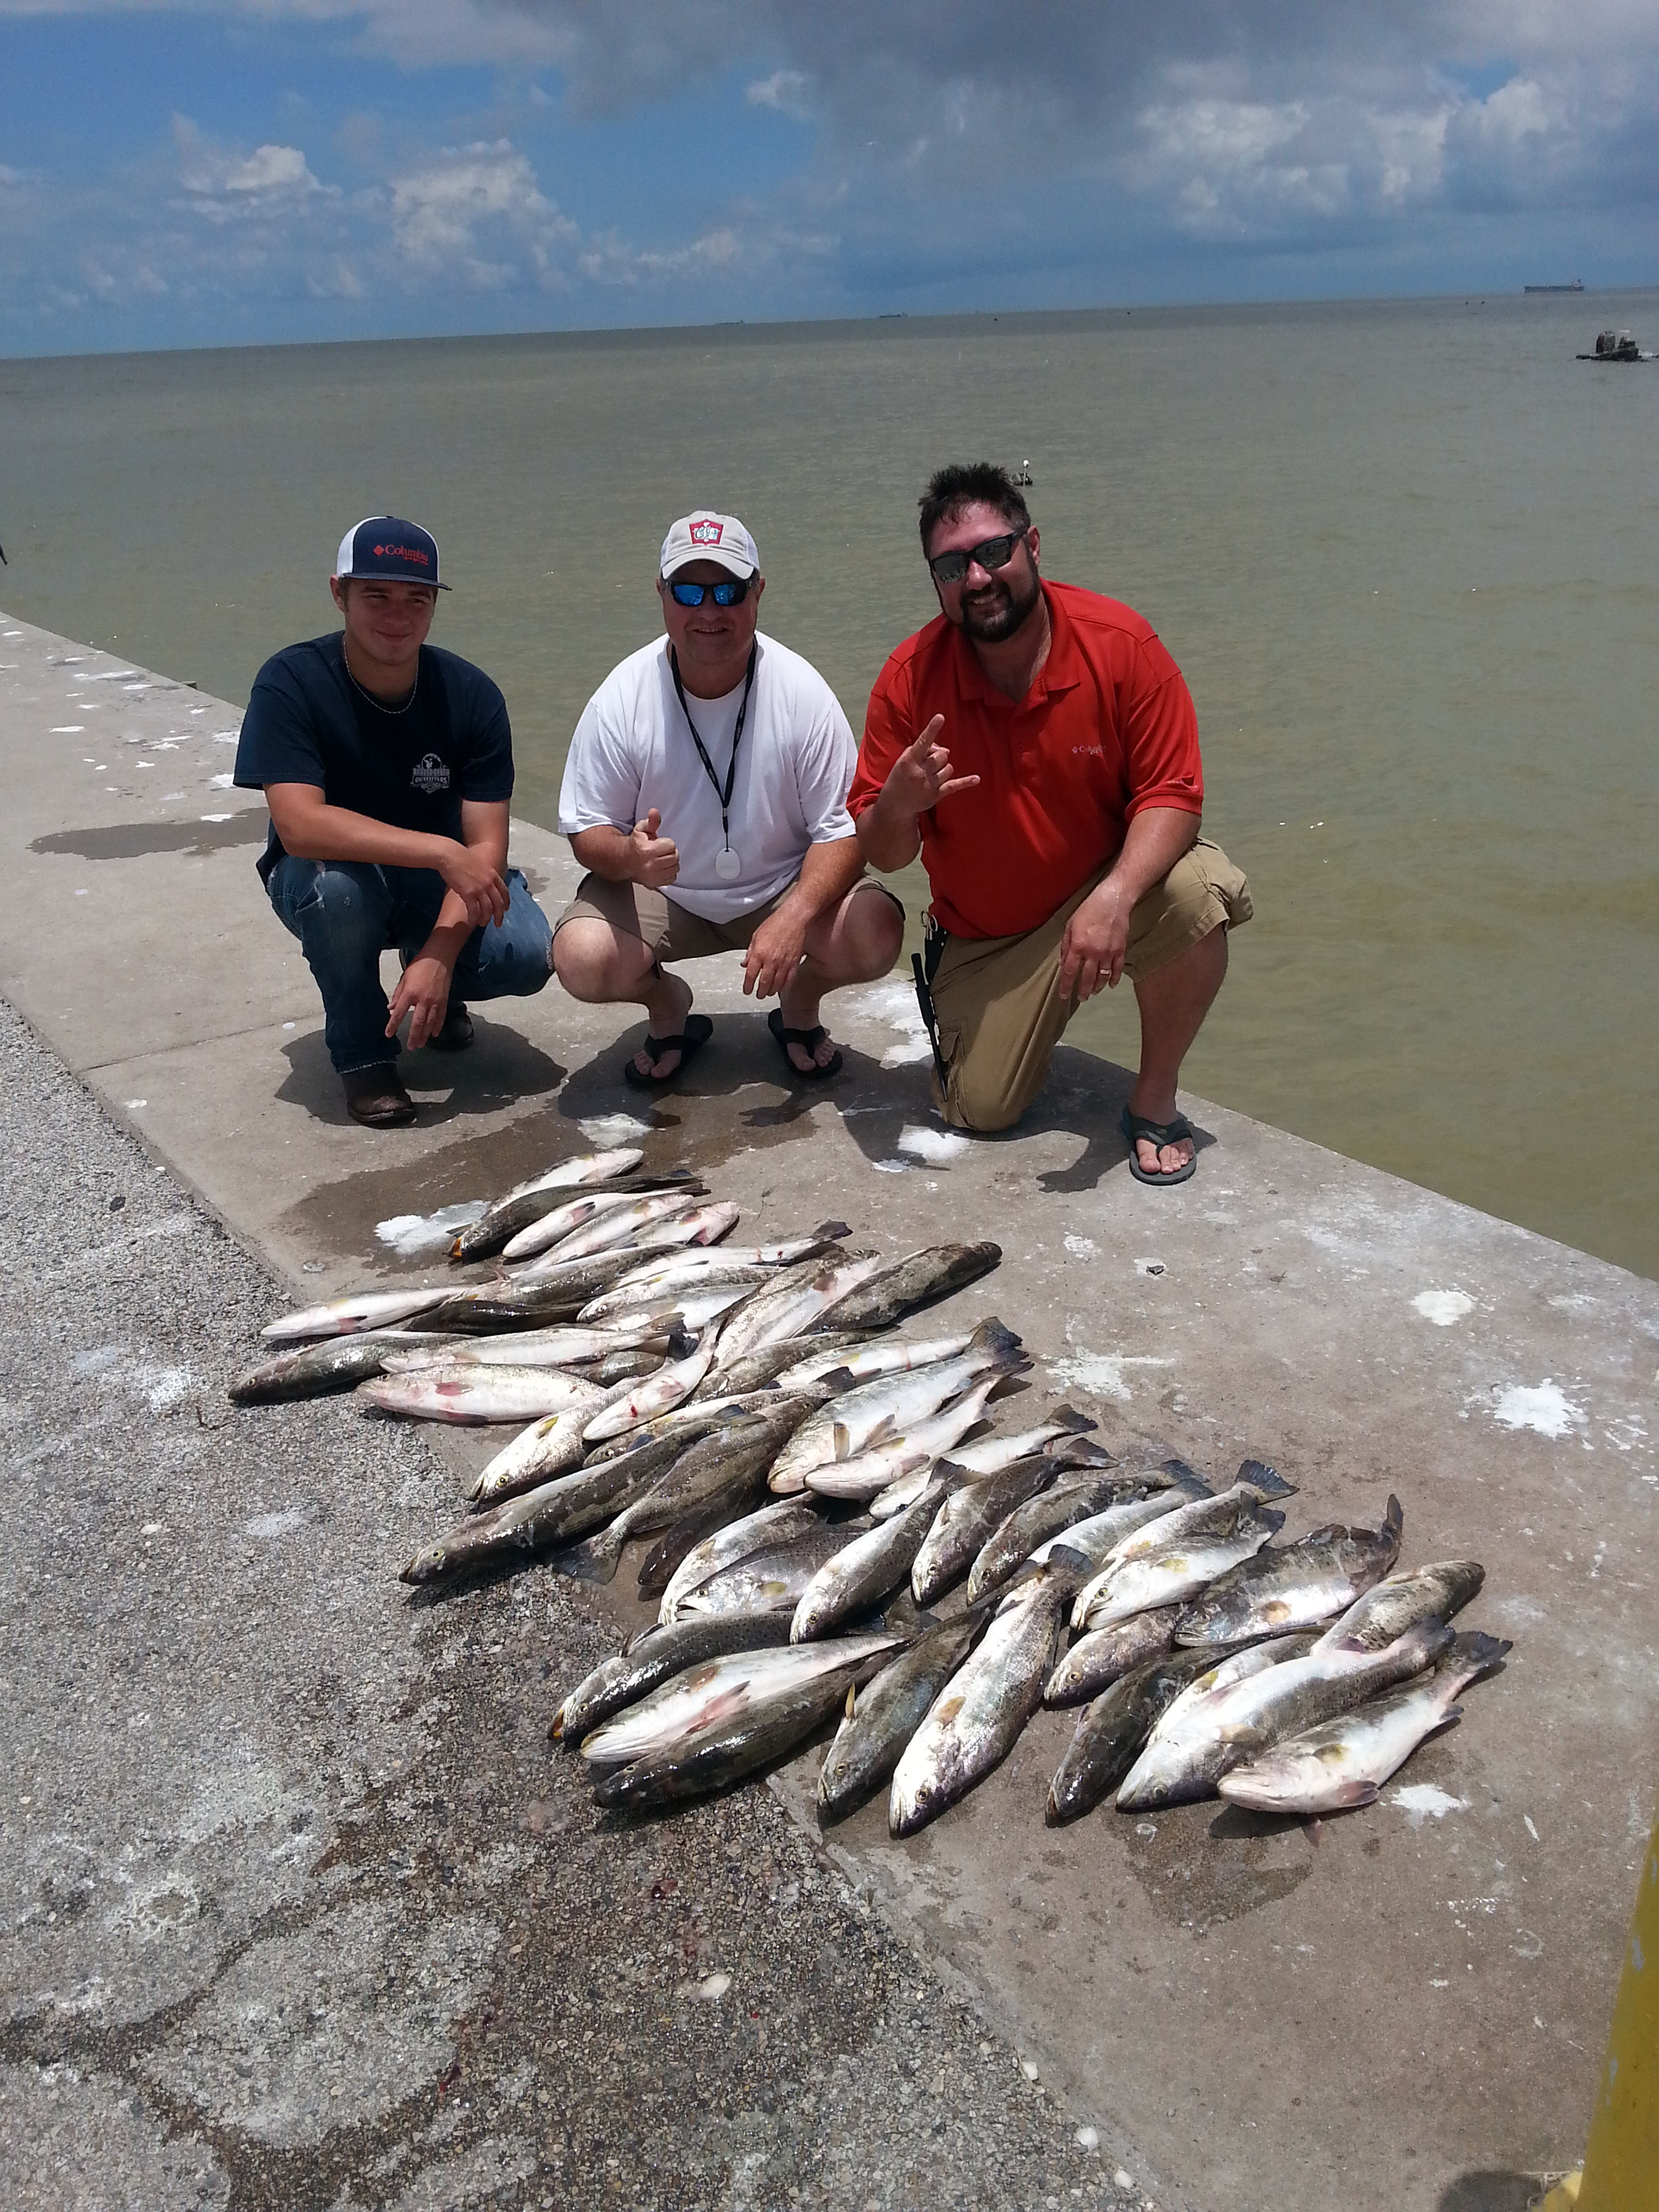 Captain Randy Flukinger: Inshore Bay Fishing - full day